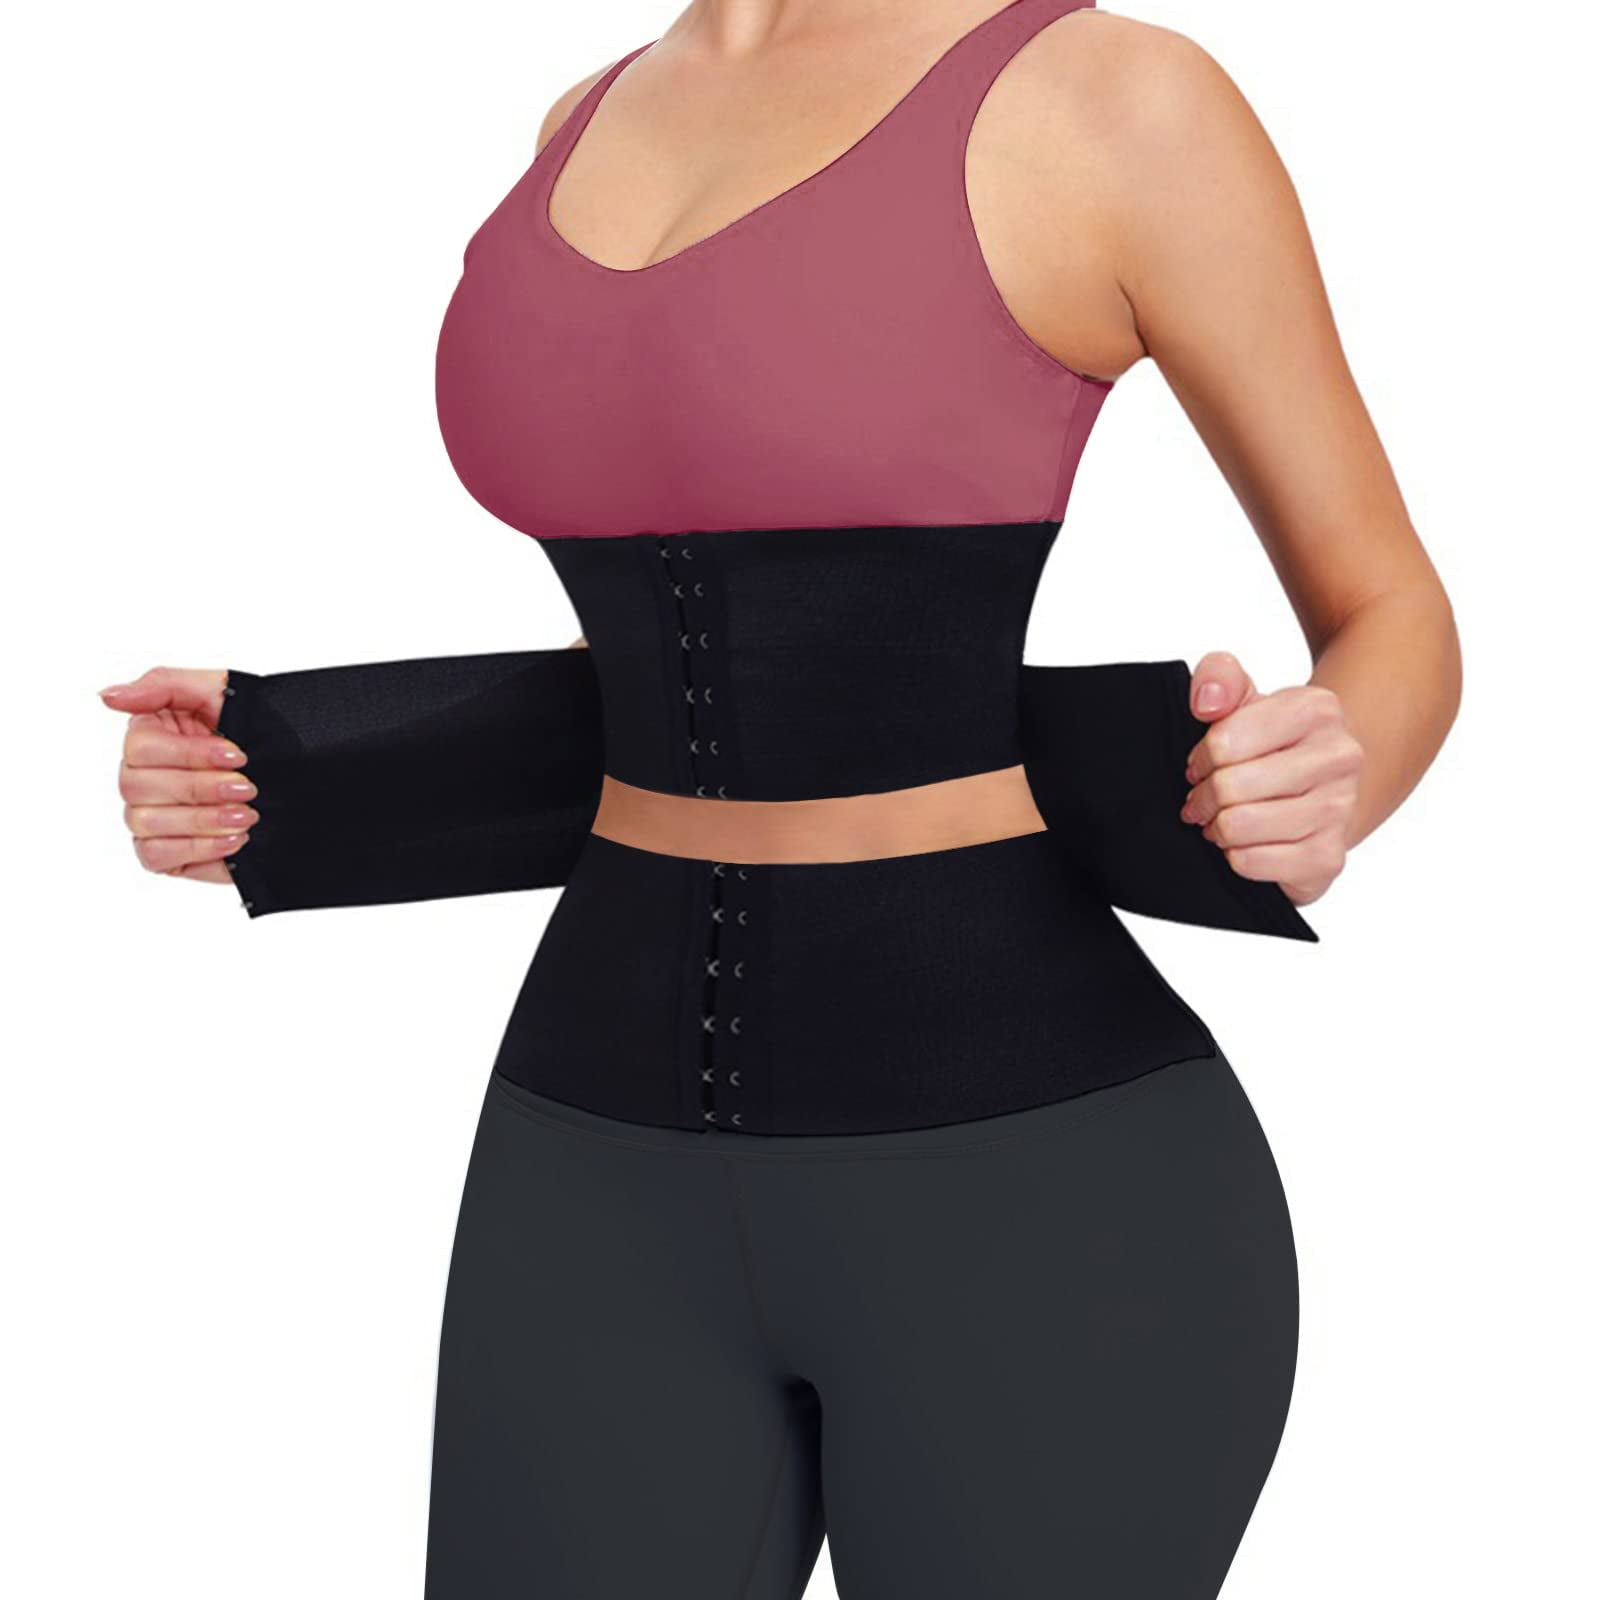 LELINTA Women's Waist Trainer Corset Hot Sweat Trimmer Belt Slimming Body  Shaper Belly Sports Girdle Waist Cincher Weight Loss Shapewear 